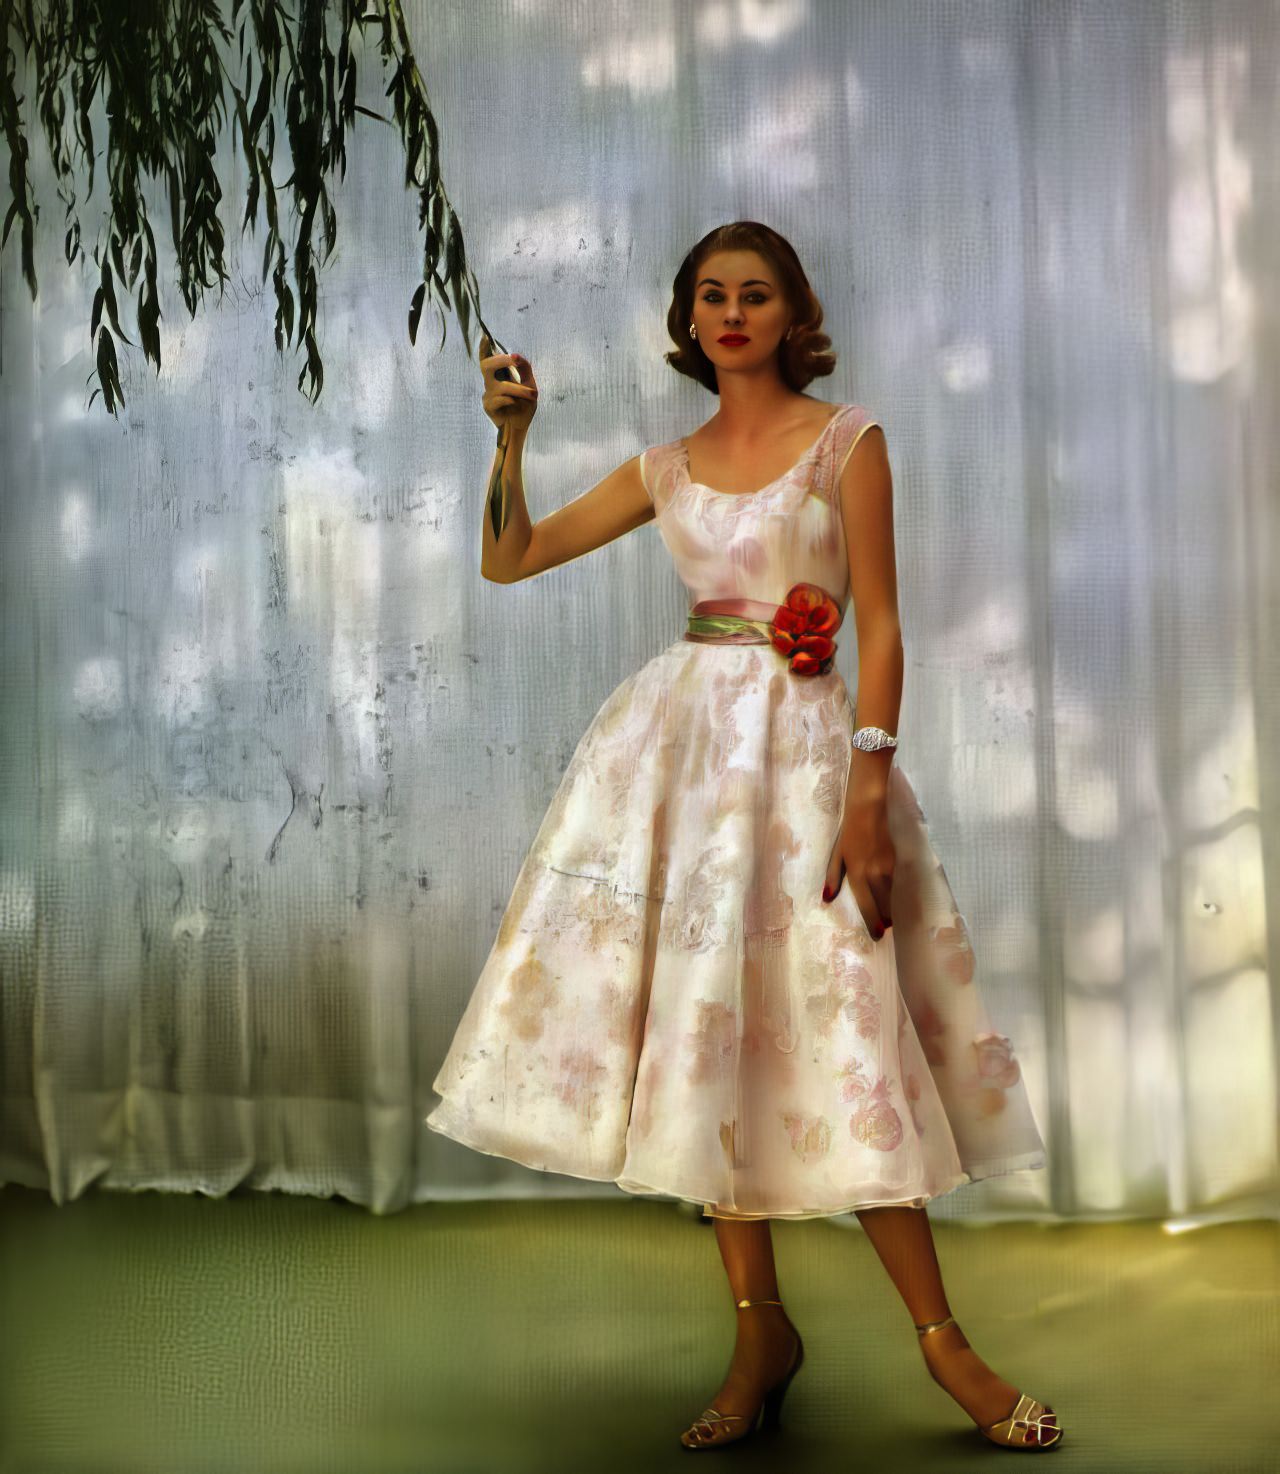 Suzy Parker in a dance dress of swirling marquisette and Enka Rayon by Harvey Berin, Harper's Bazaar, January 1952.